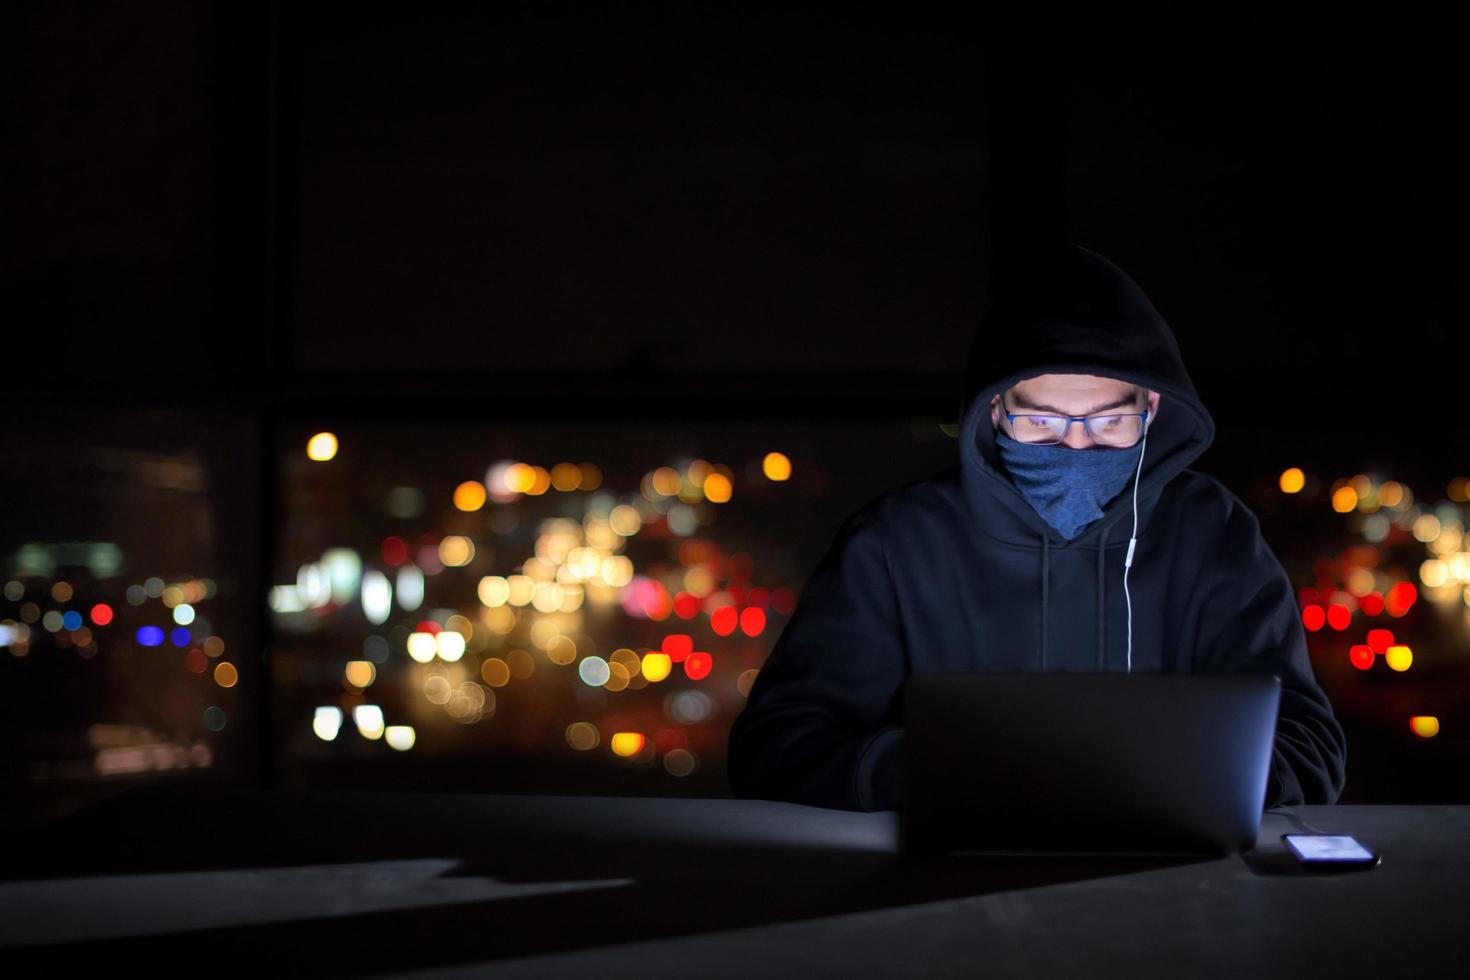 hacker, der einen laptop verwendet, während er im dunklen büro arbeitet foto